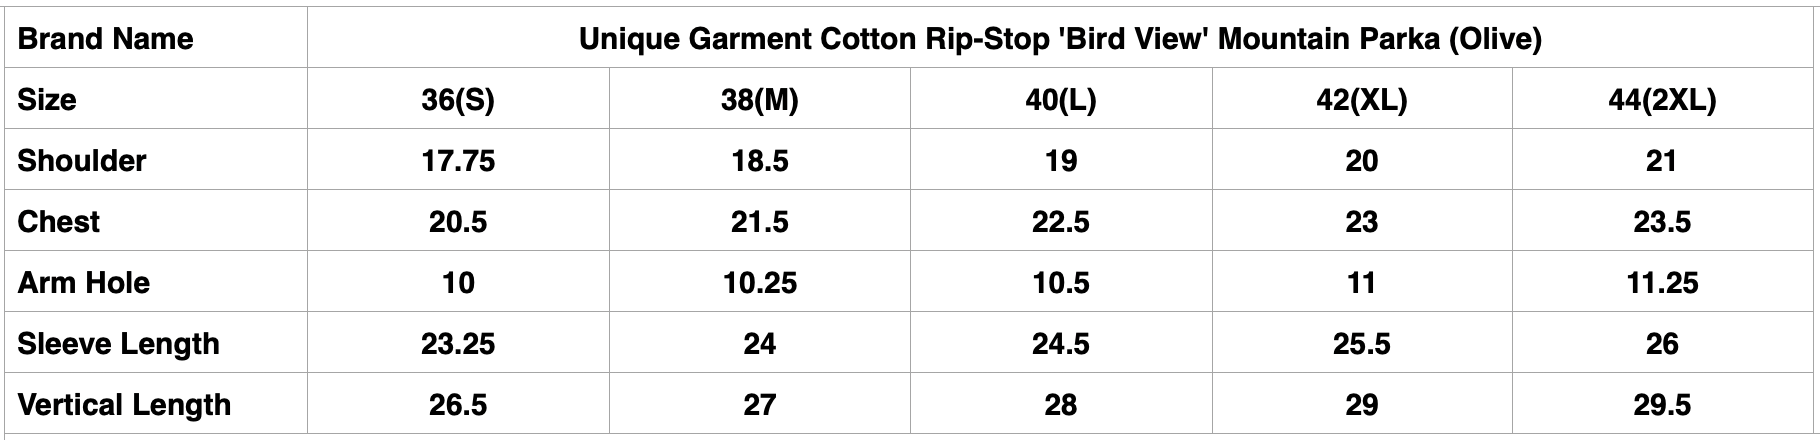 Unique Garment Cotton Rip-Stop 'Bird View' Mountain Parka (Olive)